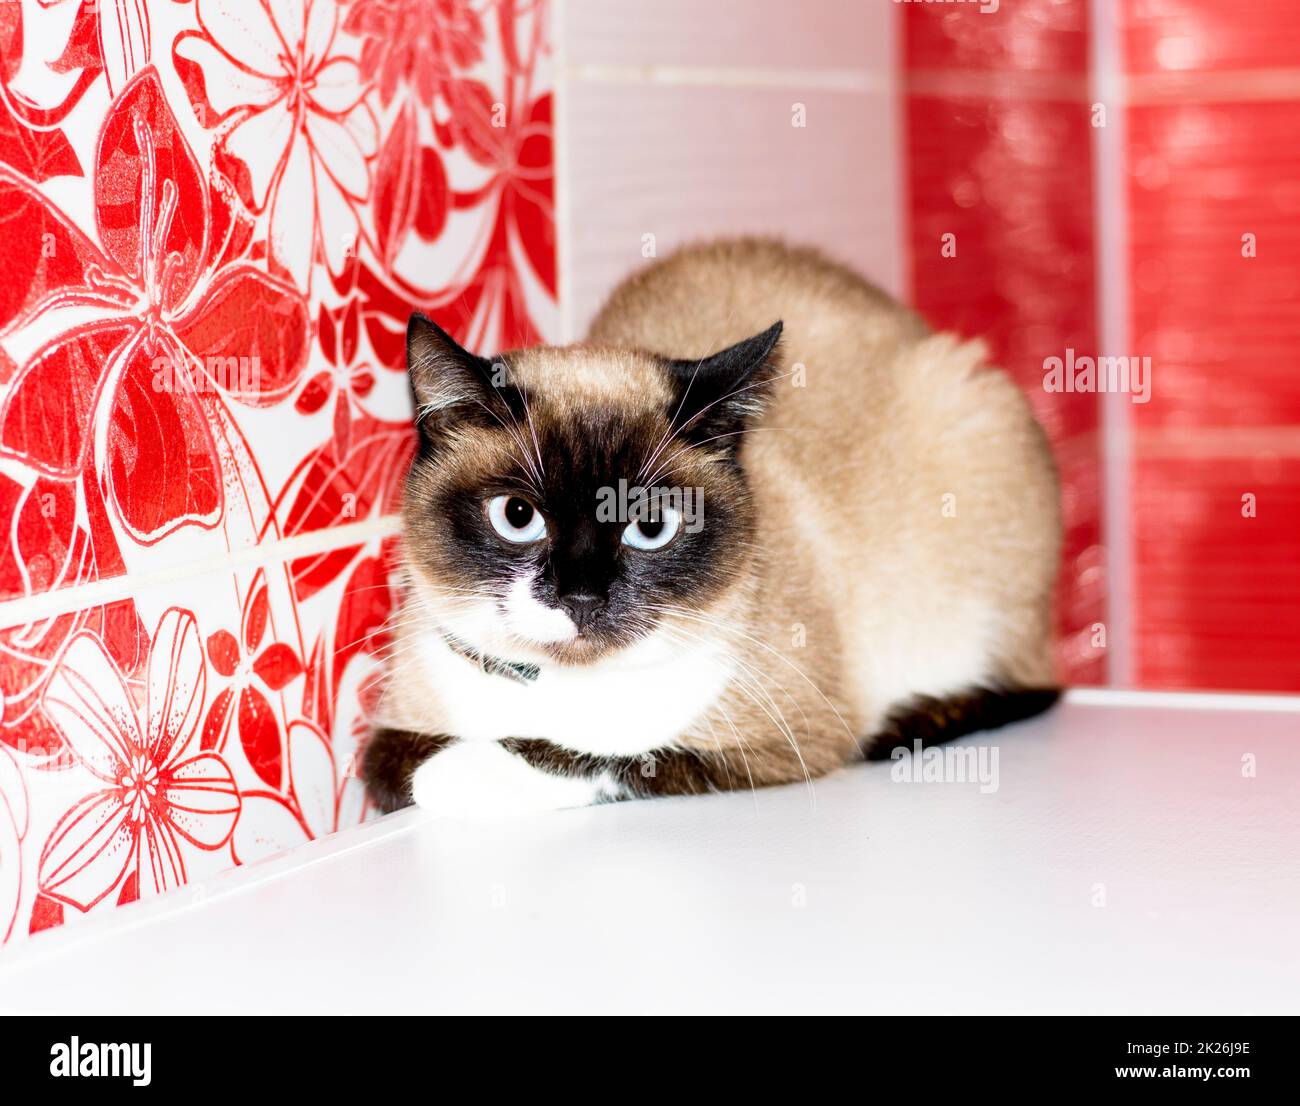 Bellissimo gatto tailandese su uno sfondo piastrellato rosso Foto Stock